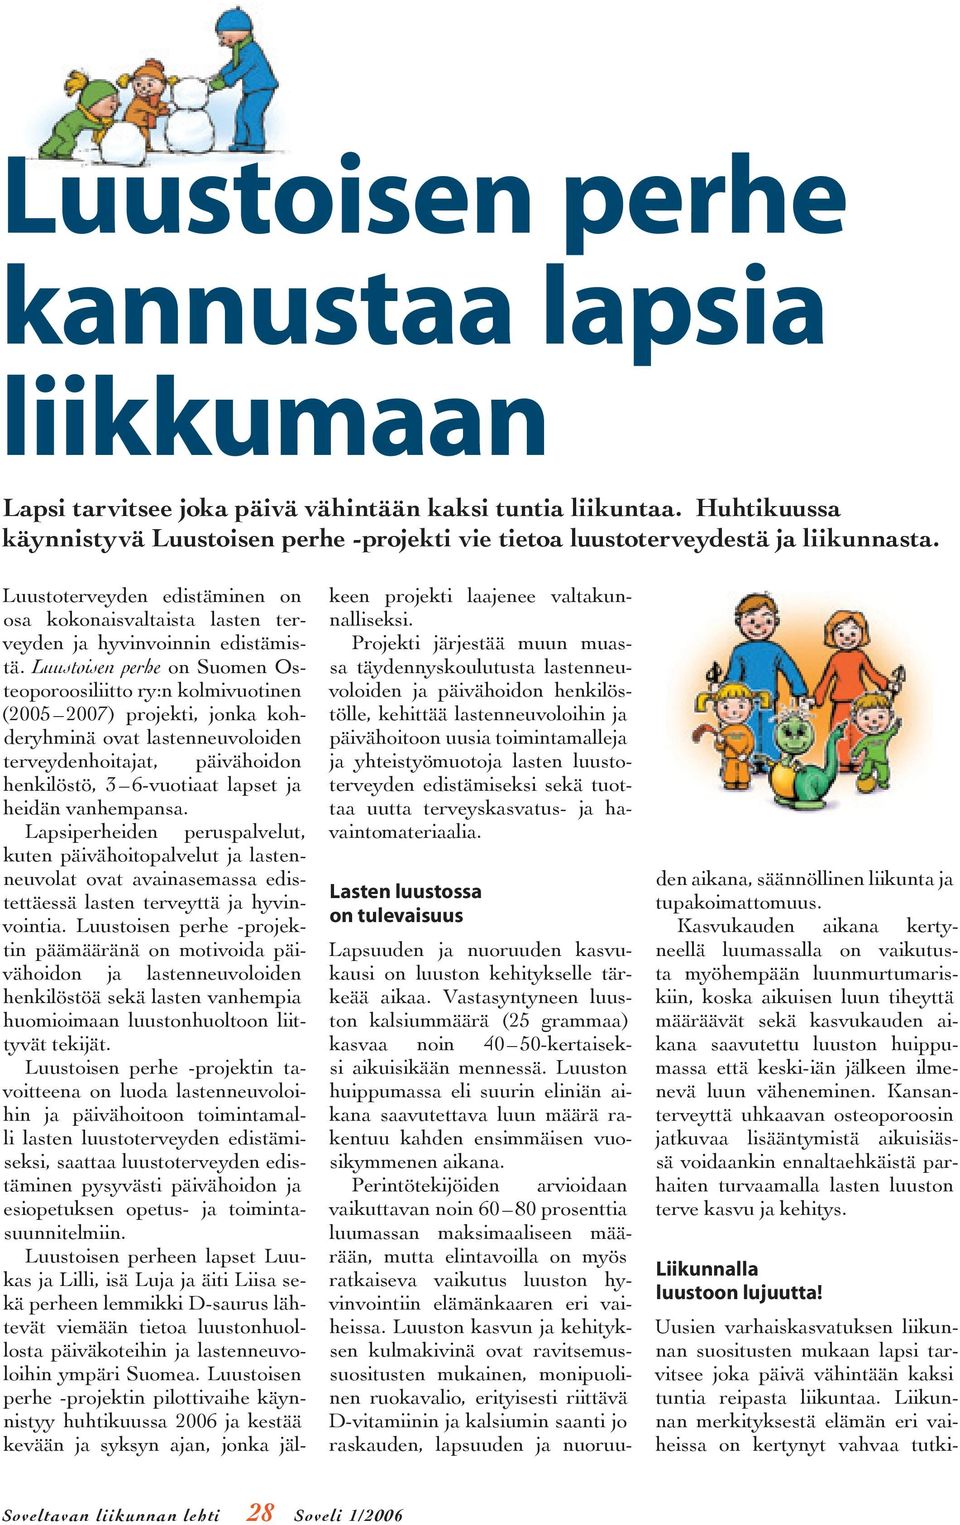 Luustoisen perhe on Suomen Osteoporoosiliitto ry:n kolmivuotinen (2005 2007) projekti, jonka kohderyhminä ovat lastenneuvoloiden terveydenhoitajat, päivähoidon henkilöstö, 3 6-vuotiaat lapset ja